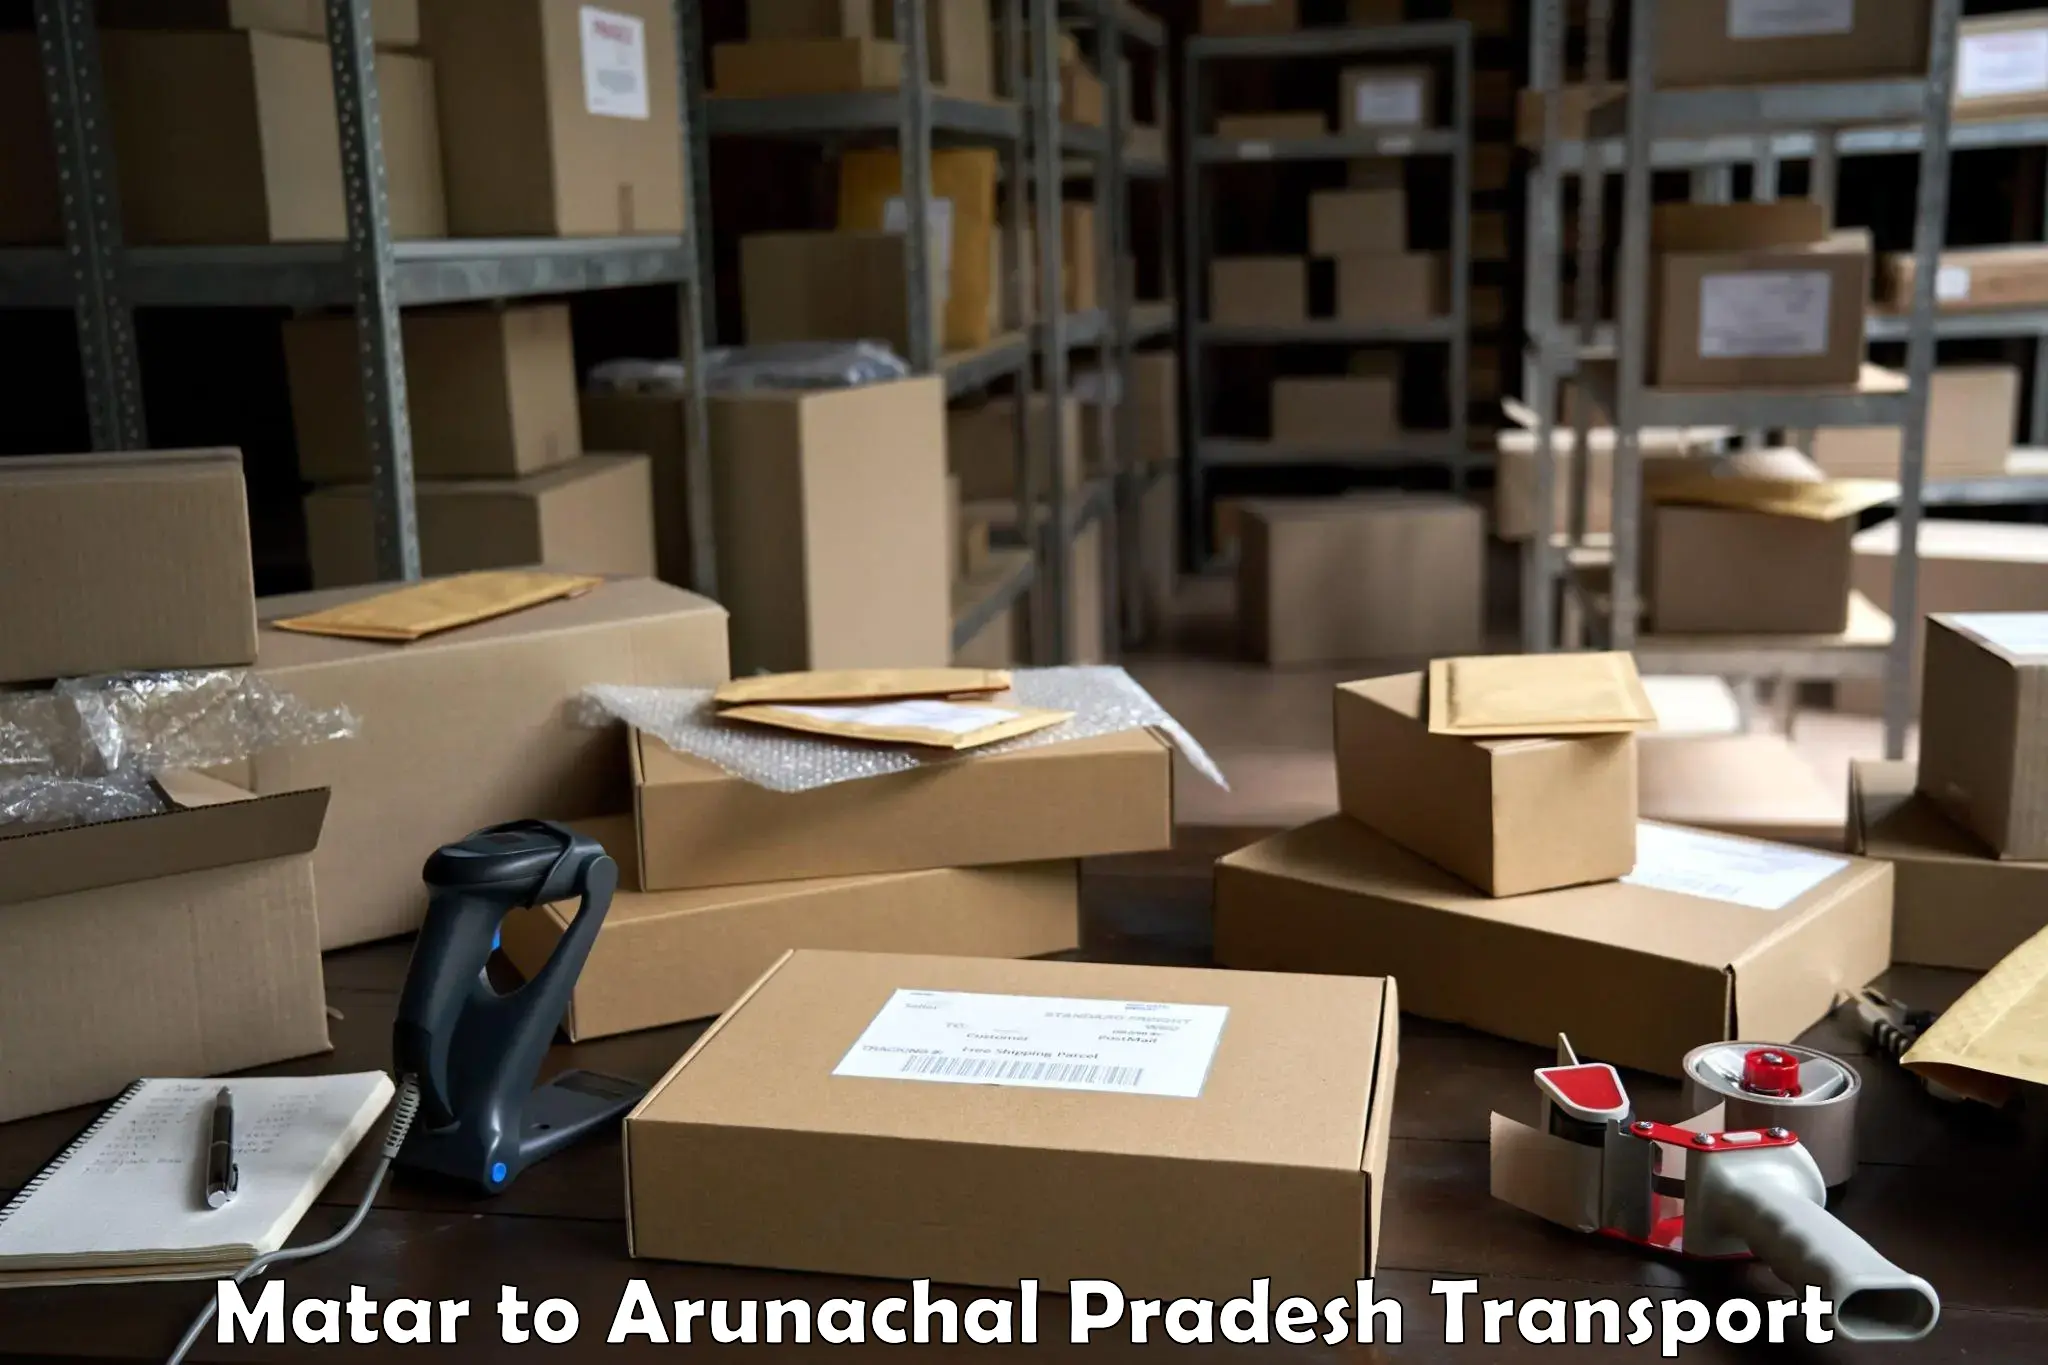 Cargo train transport services in Matar to Arunachal Pradesh